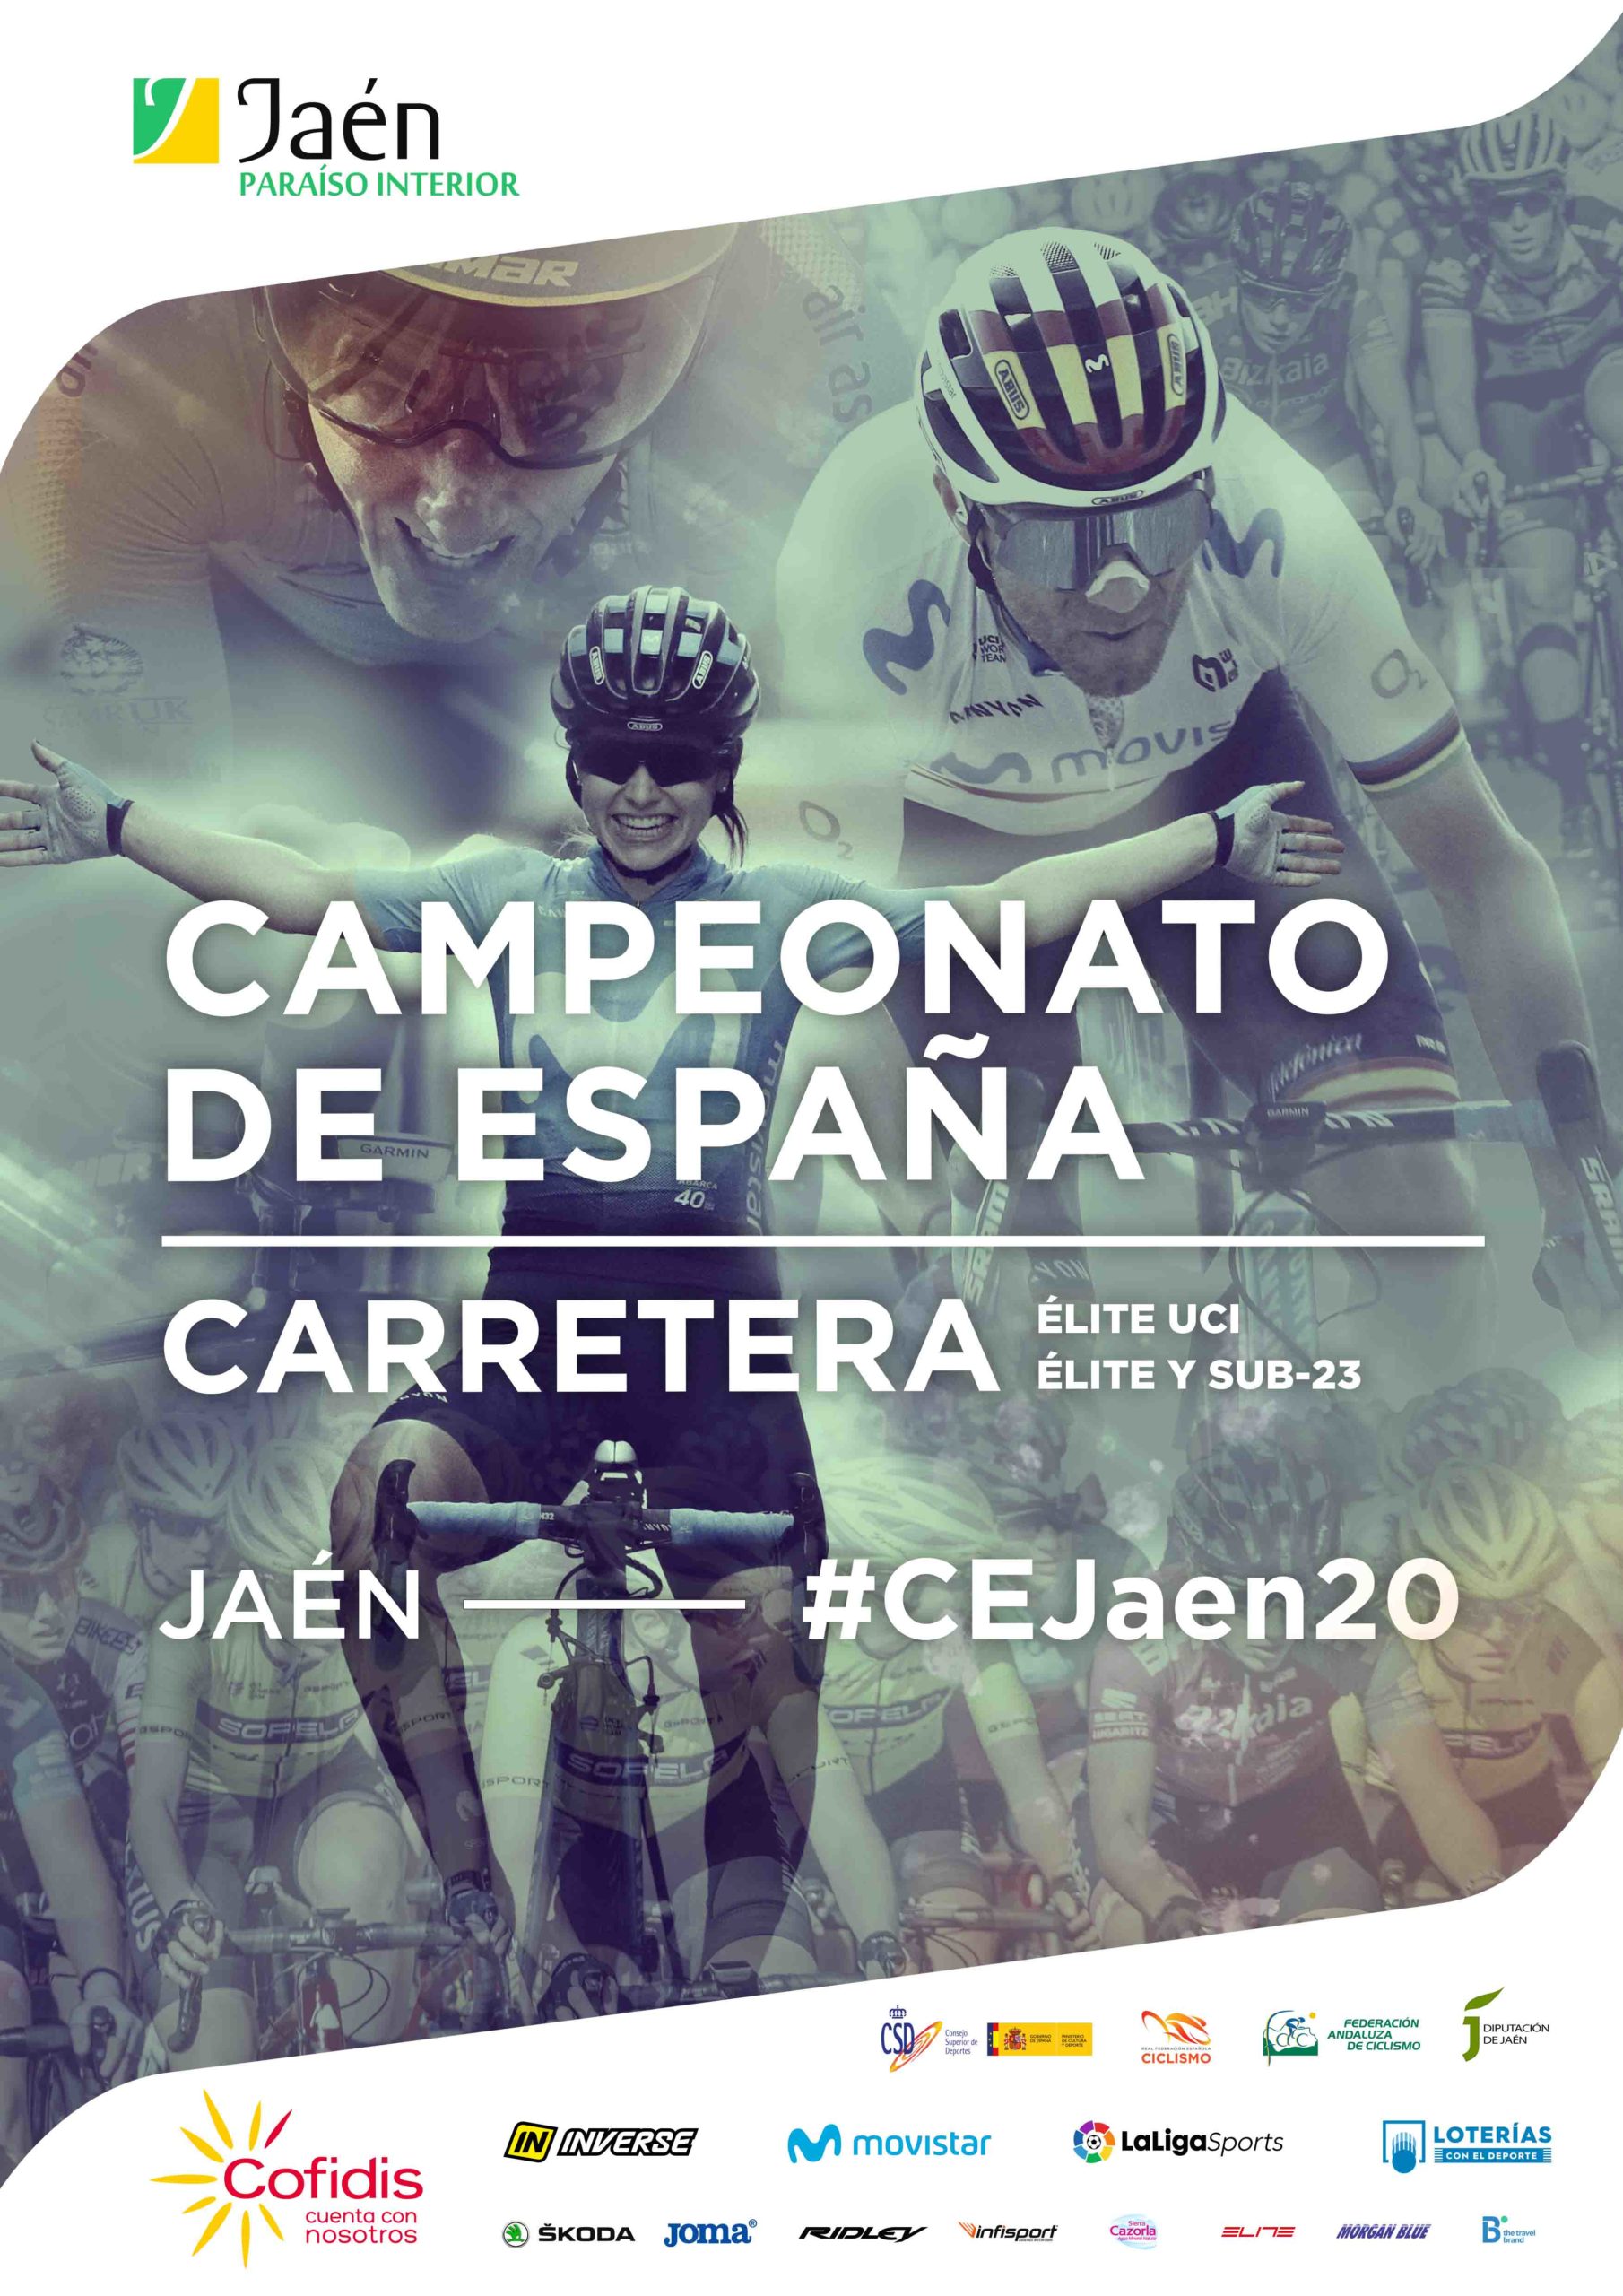 Jaen acoge el campeonato de España ciclismo en carretera 2020